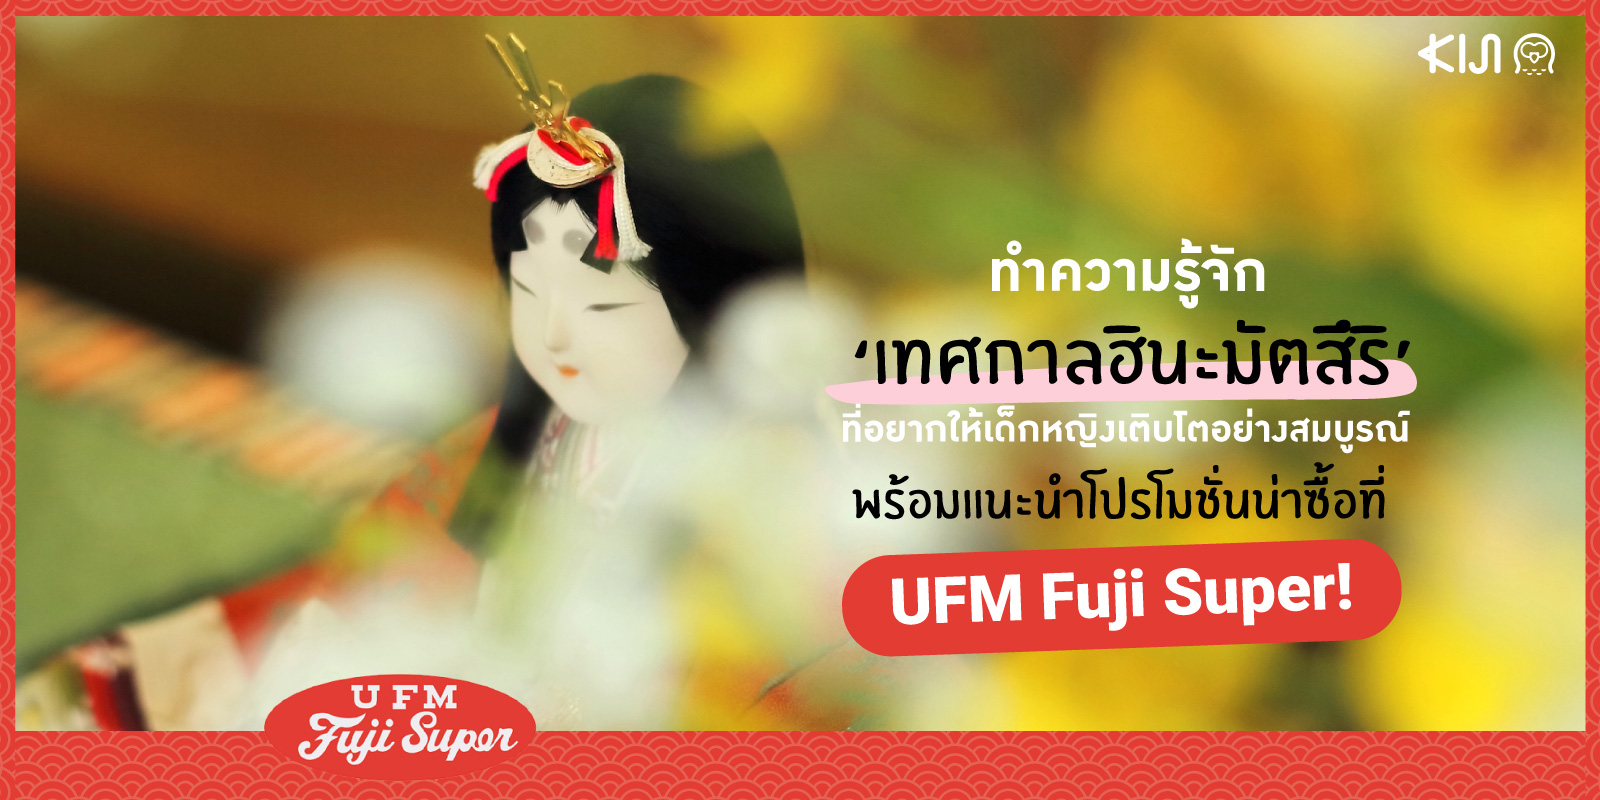 เทศกาลฮินะมัตสึริ (Hina Matsuri) x UFM Fuji Super